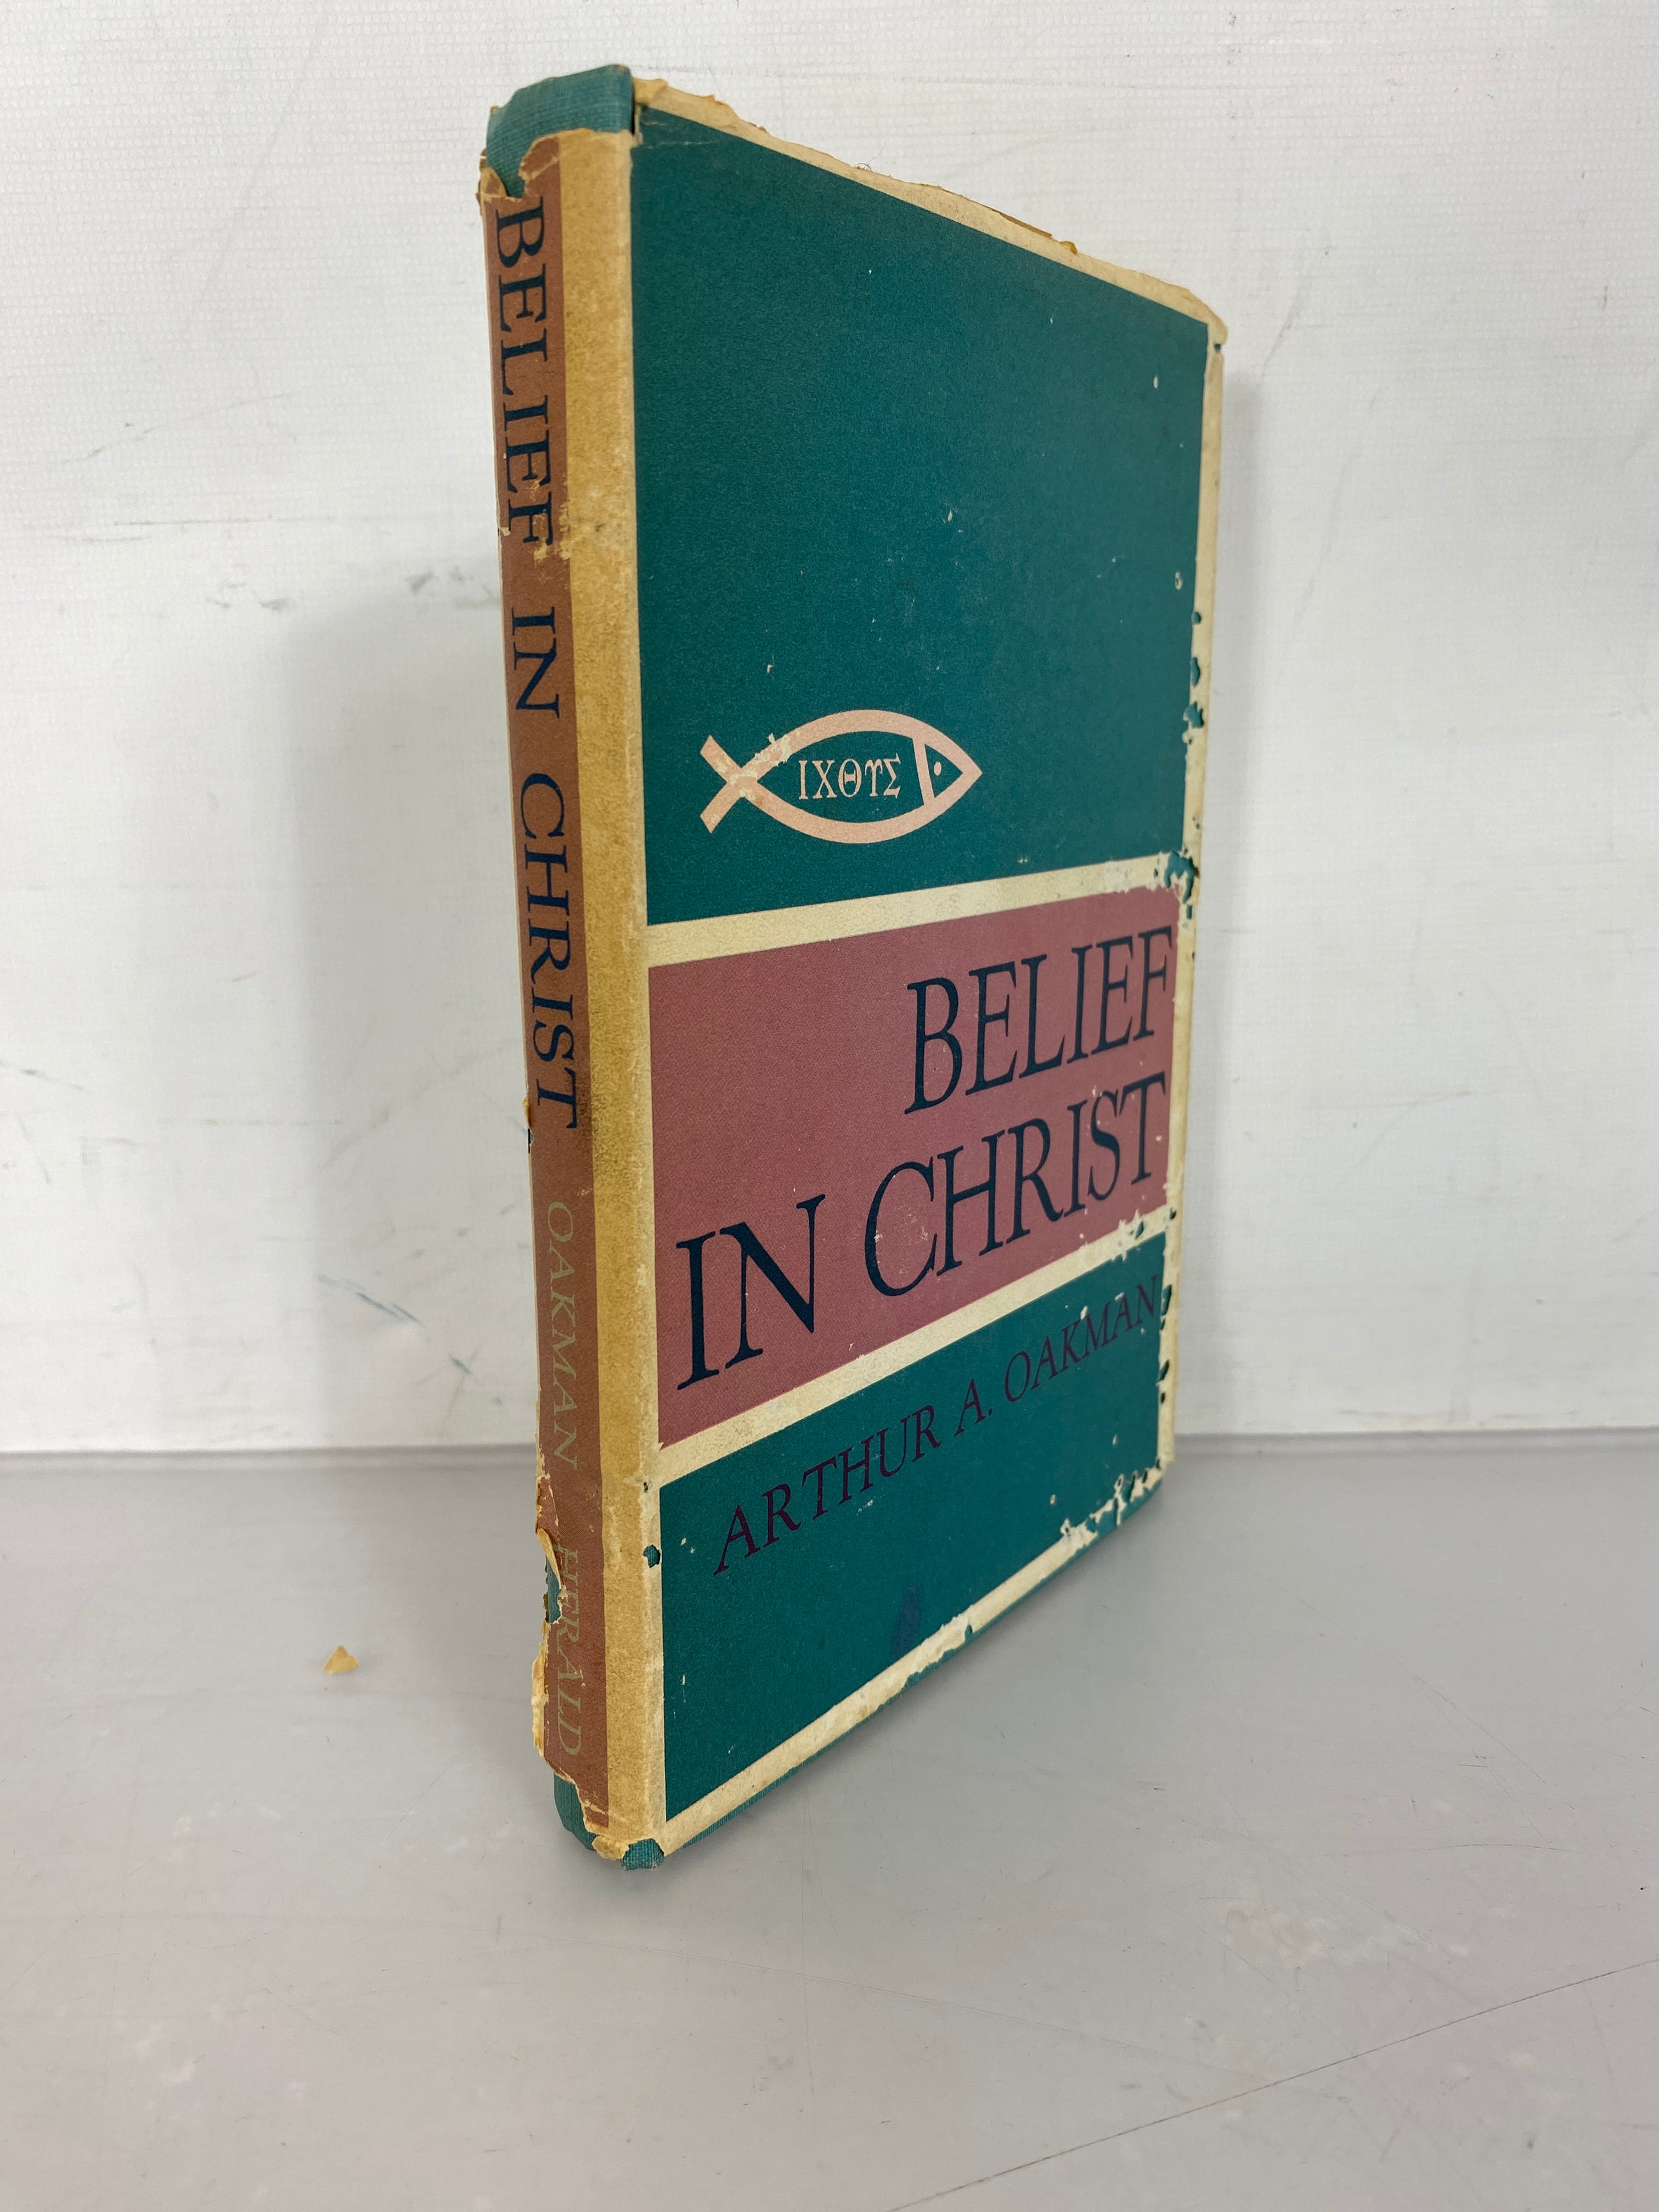 Belief In Christ by Arthur A. Oakman 1964 Herald Publishing House HC DJ